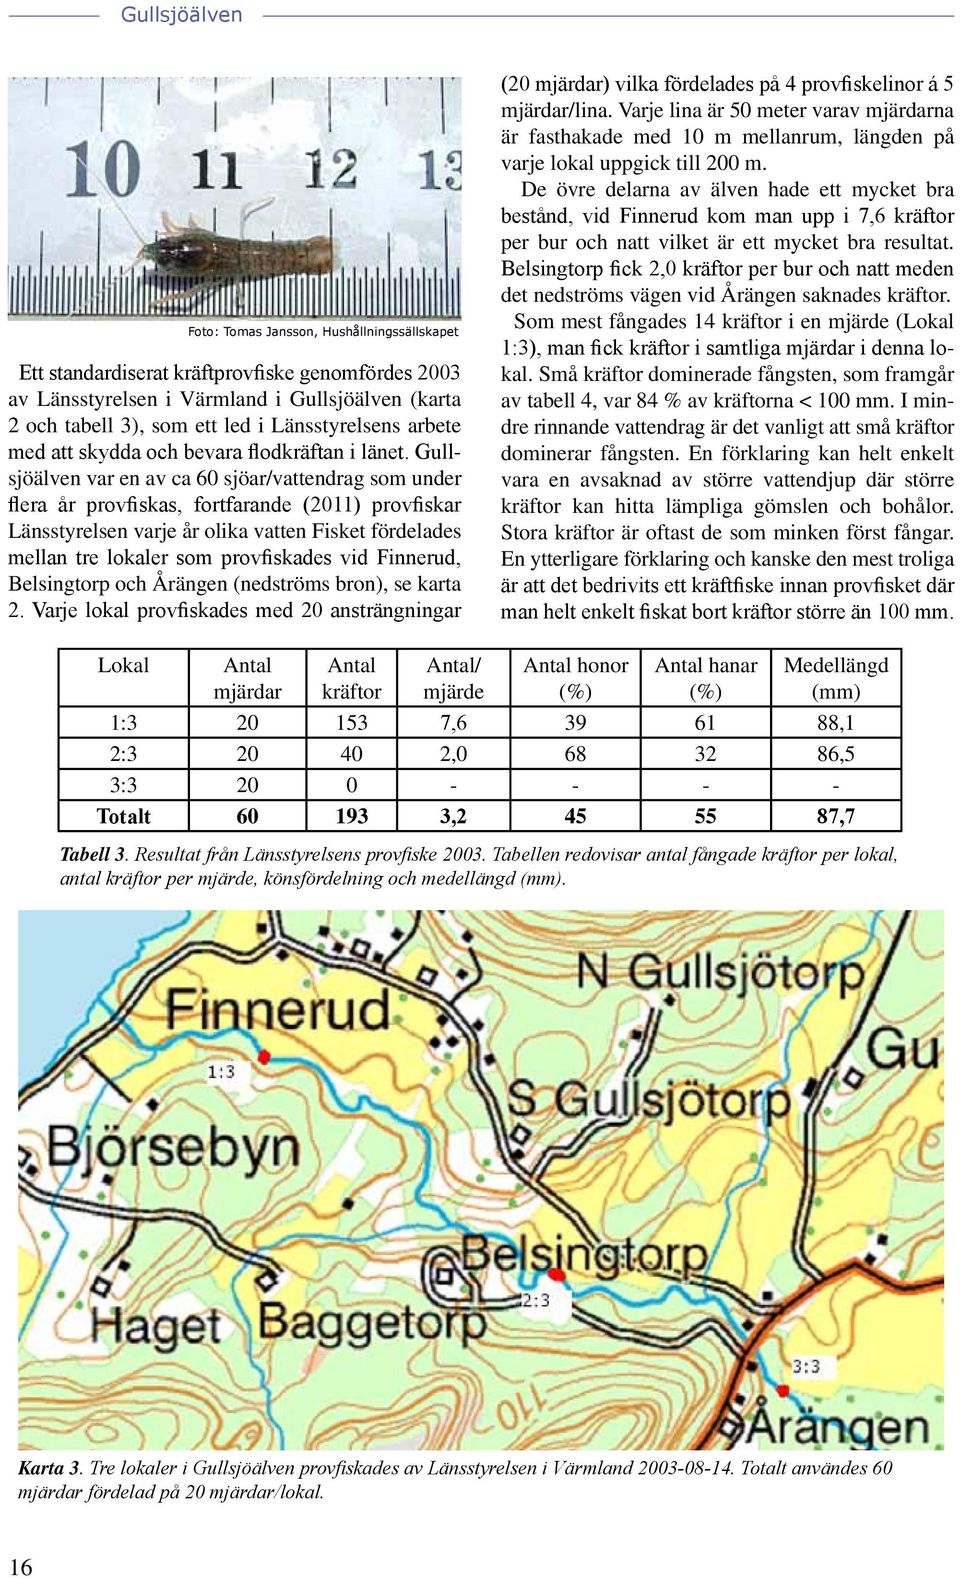 vid Finnerud, Belsingtorp och Årängen (nedströms bron), se karta 2. Varje lokal provfiskades med 20 ansträngningar (20 mjärdar) vilka fördelades på 4 provfiskelinor á 5 mjärdar/lina.